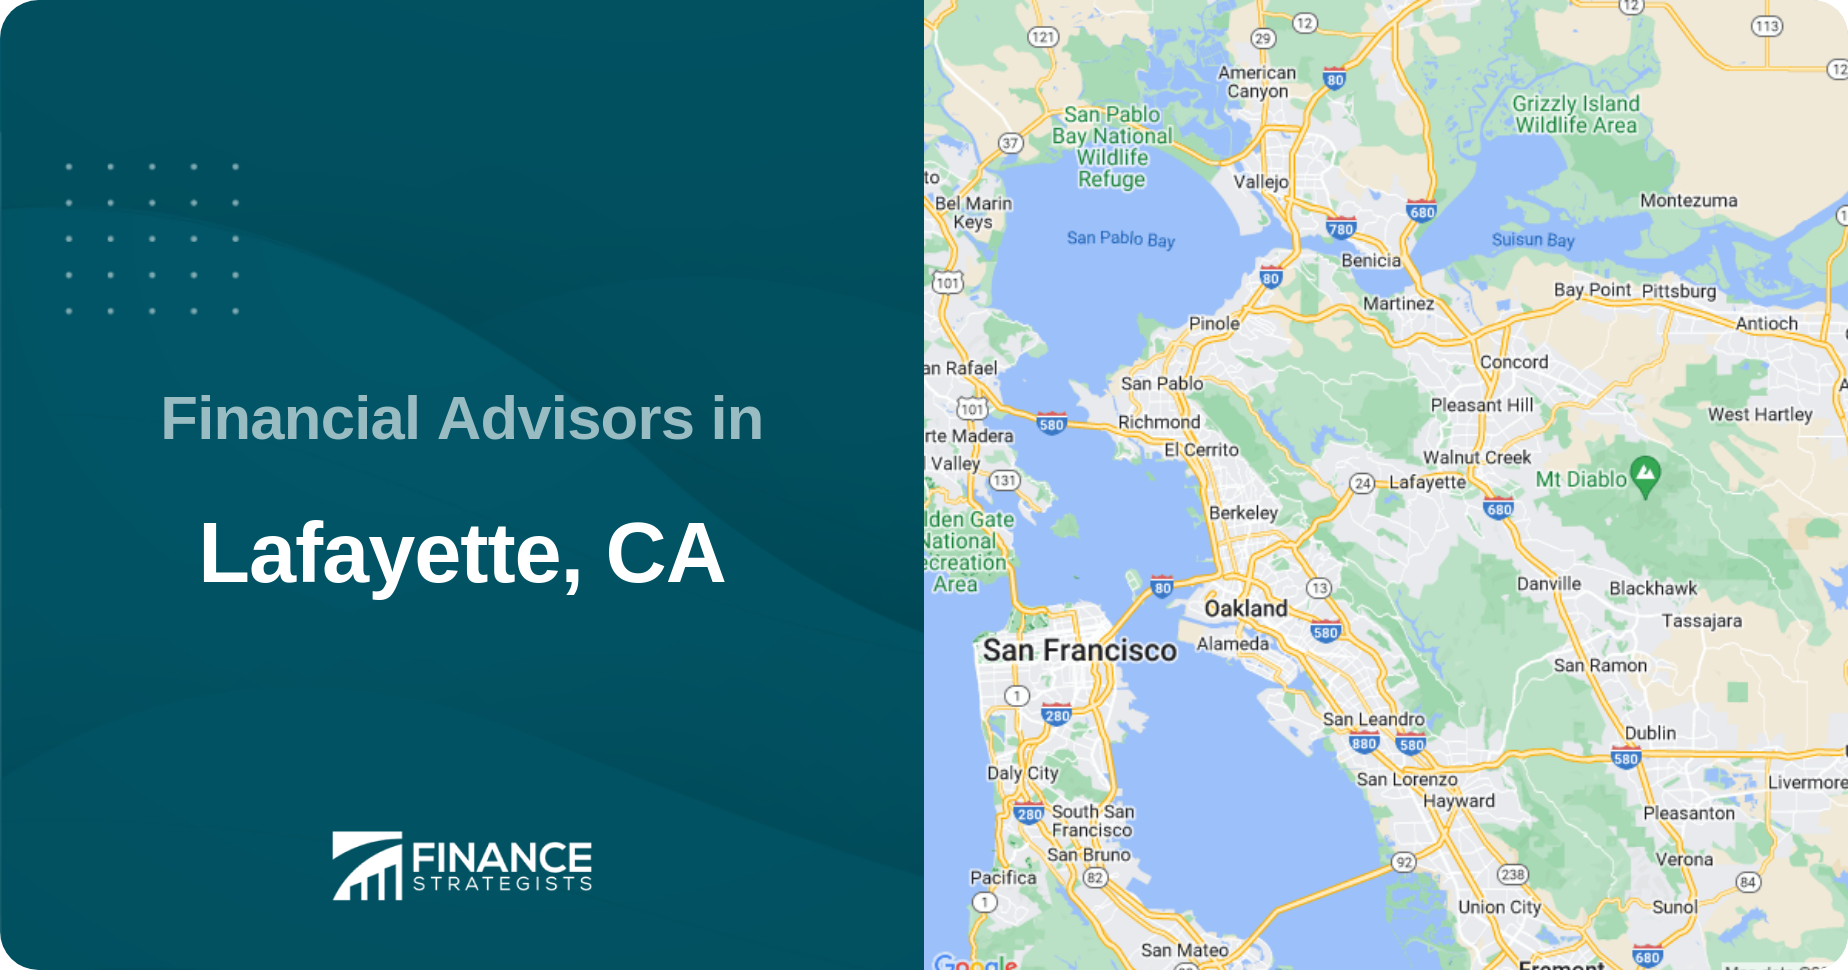 Financial Advisors in Lafayette, CA